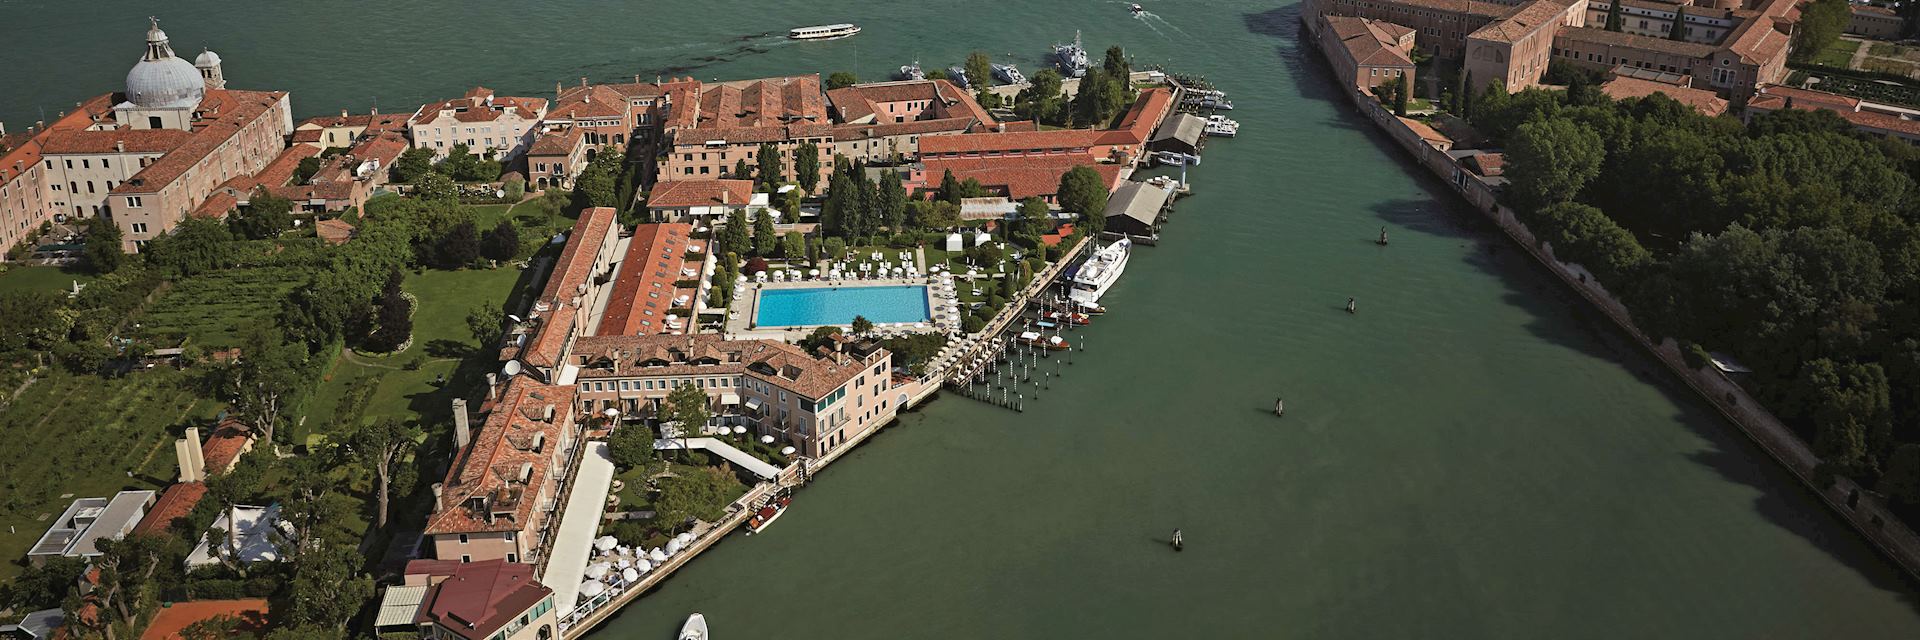 Belmond Hotel Cipriani, Venice, Italy